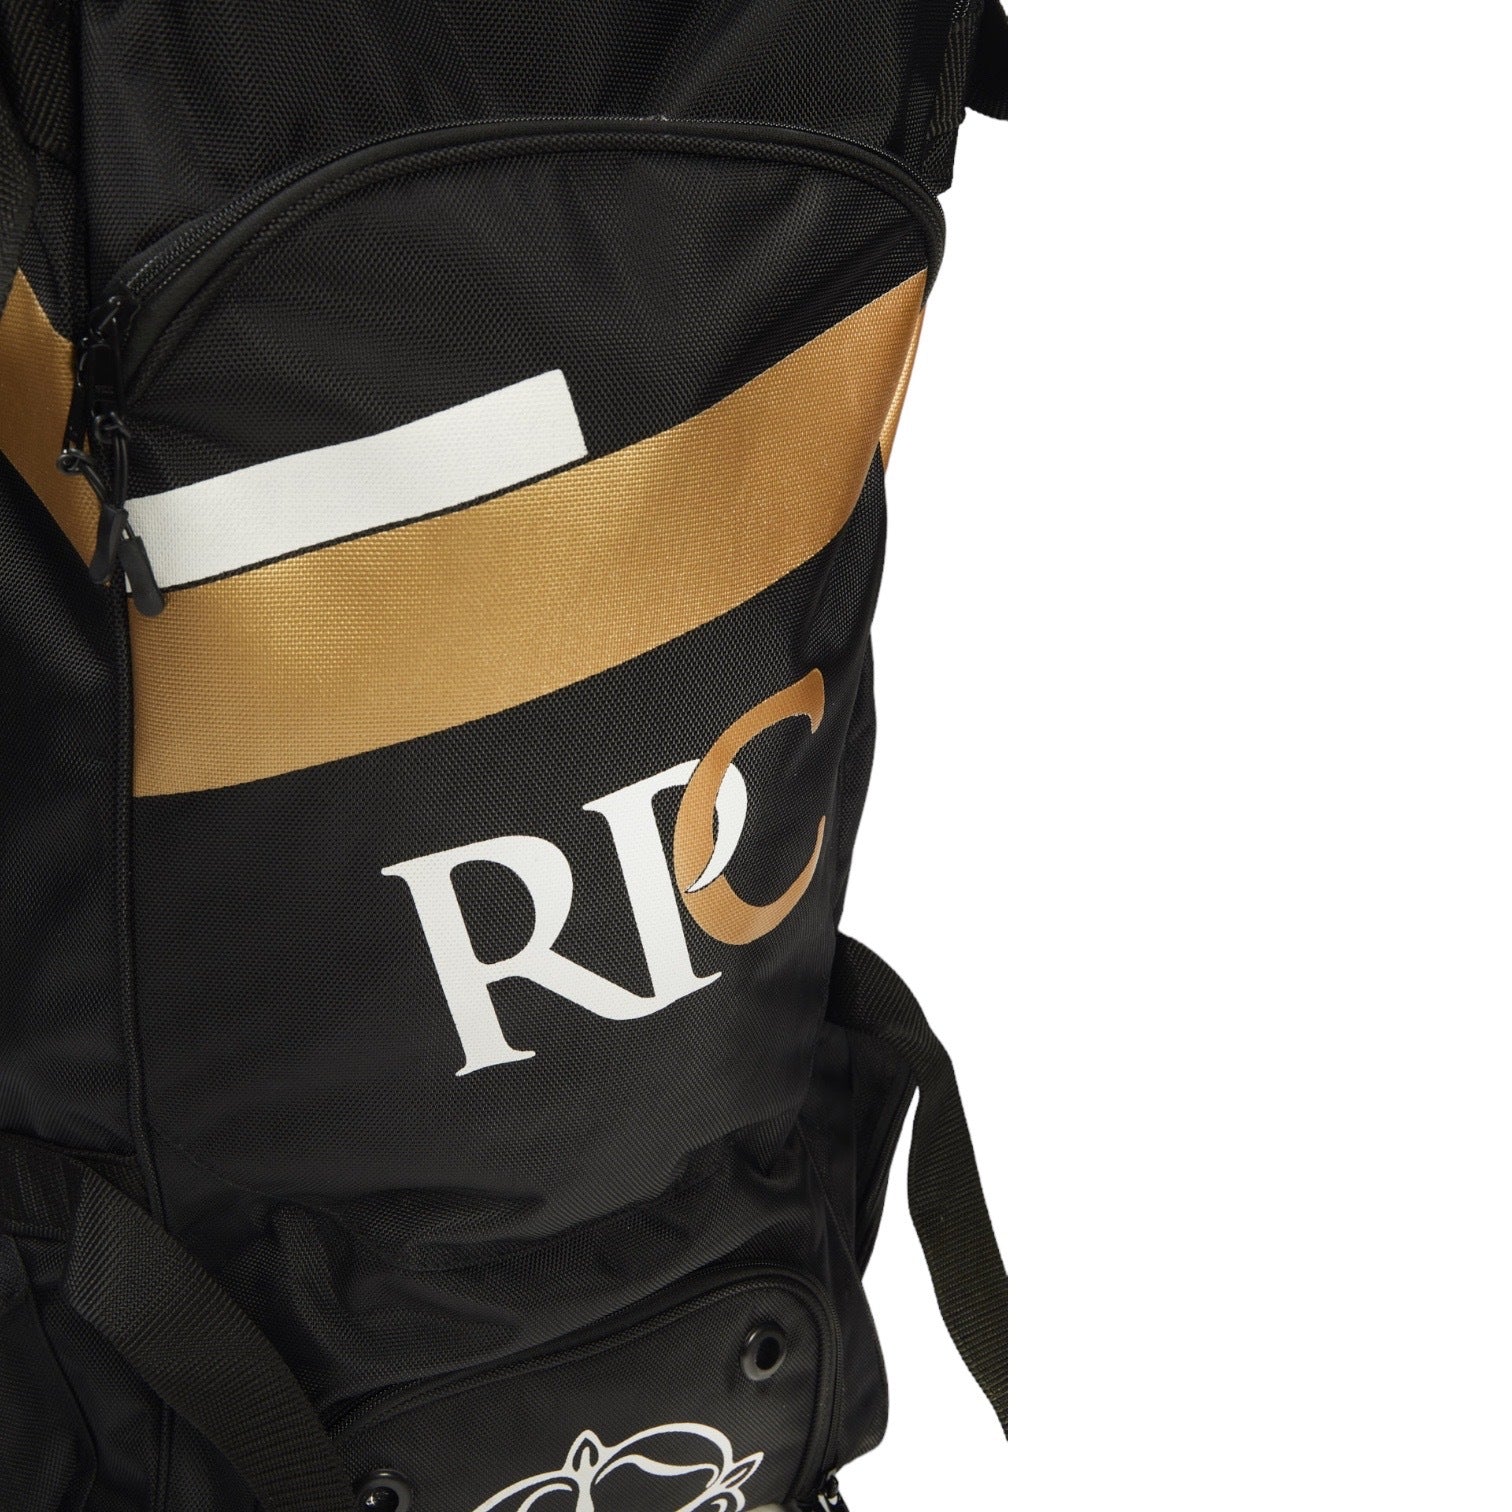 Robert Pack Cricket Test Wheelie Duffle Bag